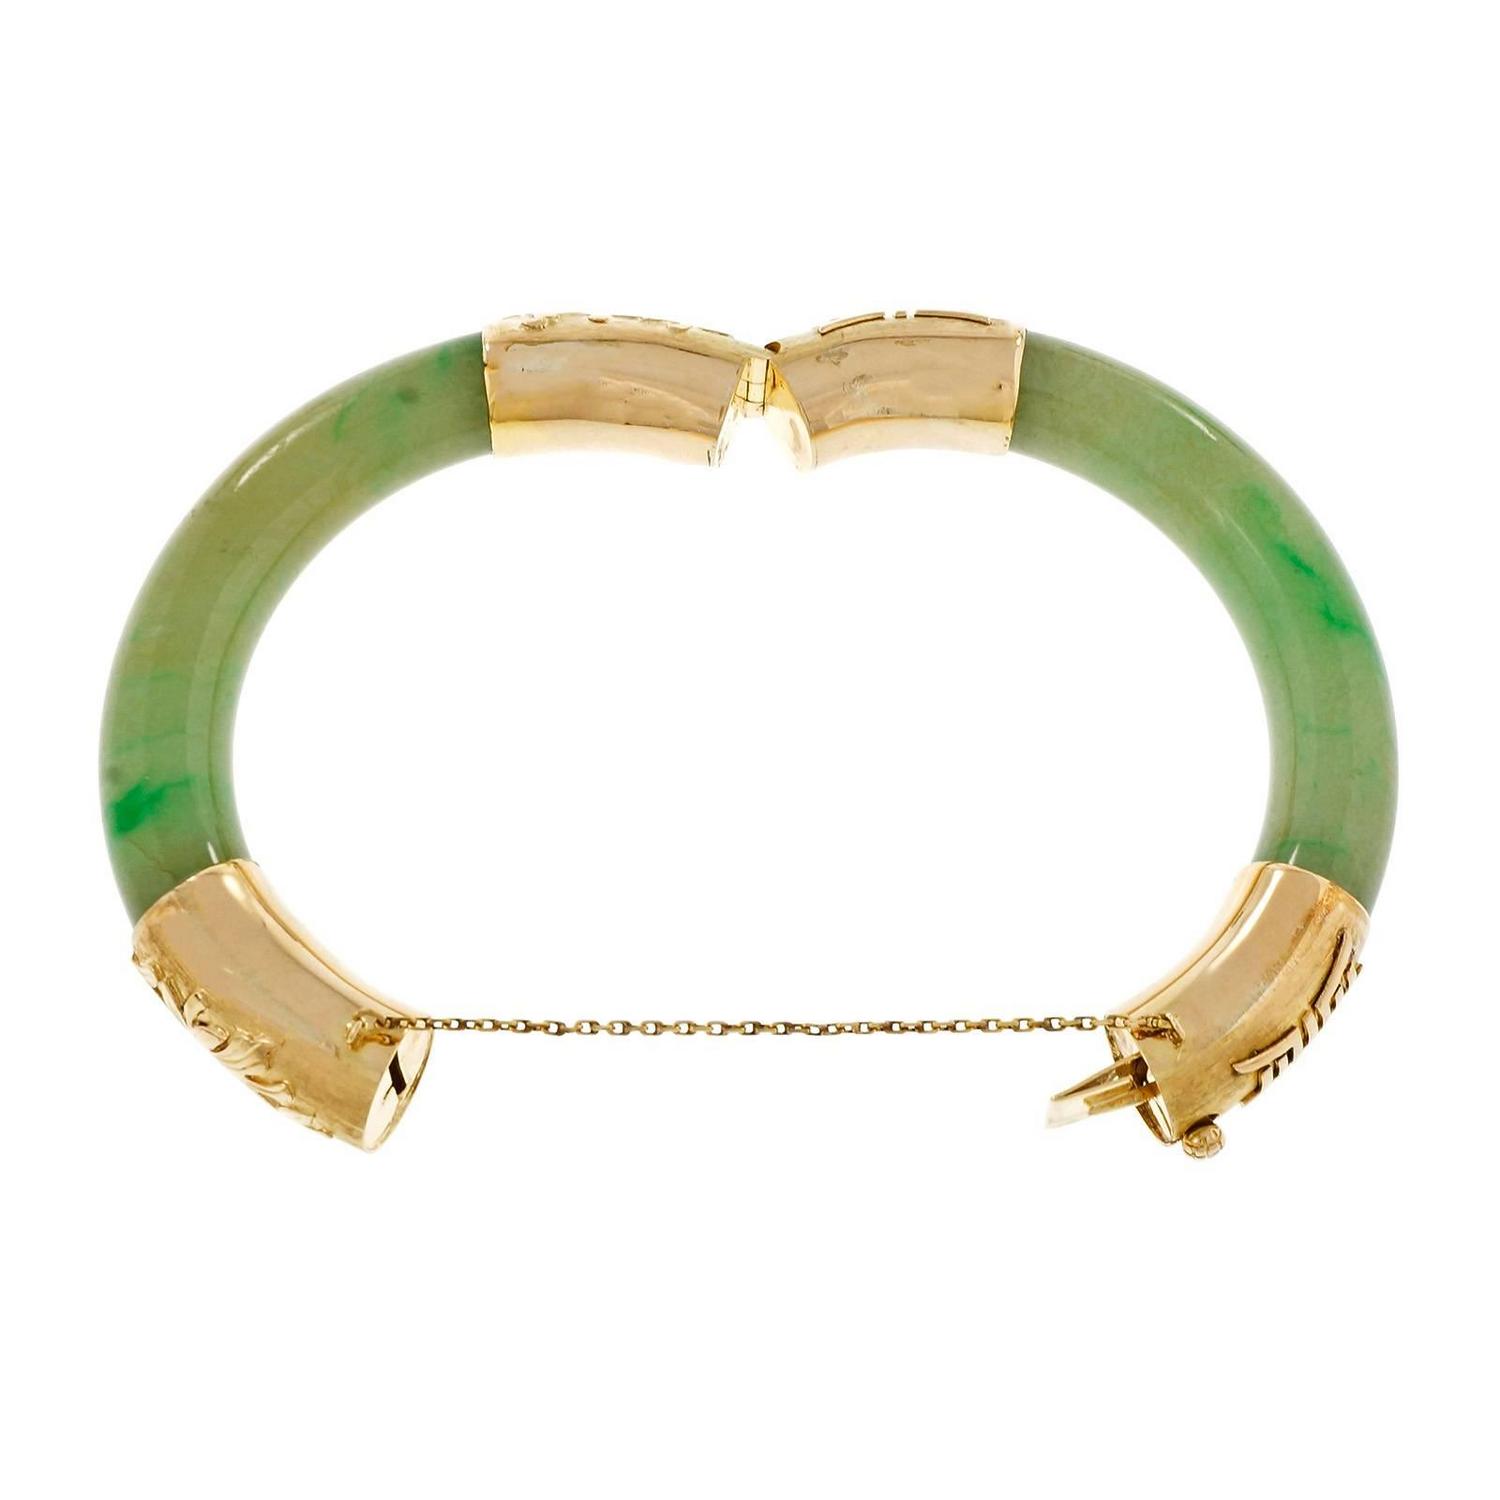 Natural Green Jadeite Jade Gold Bangle Bracelet For Sale at 1stdibs